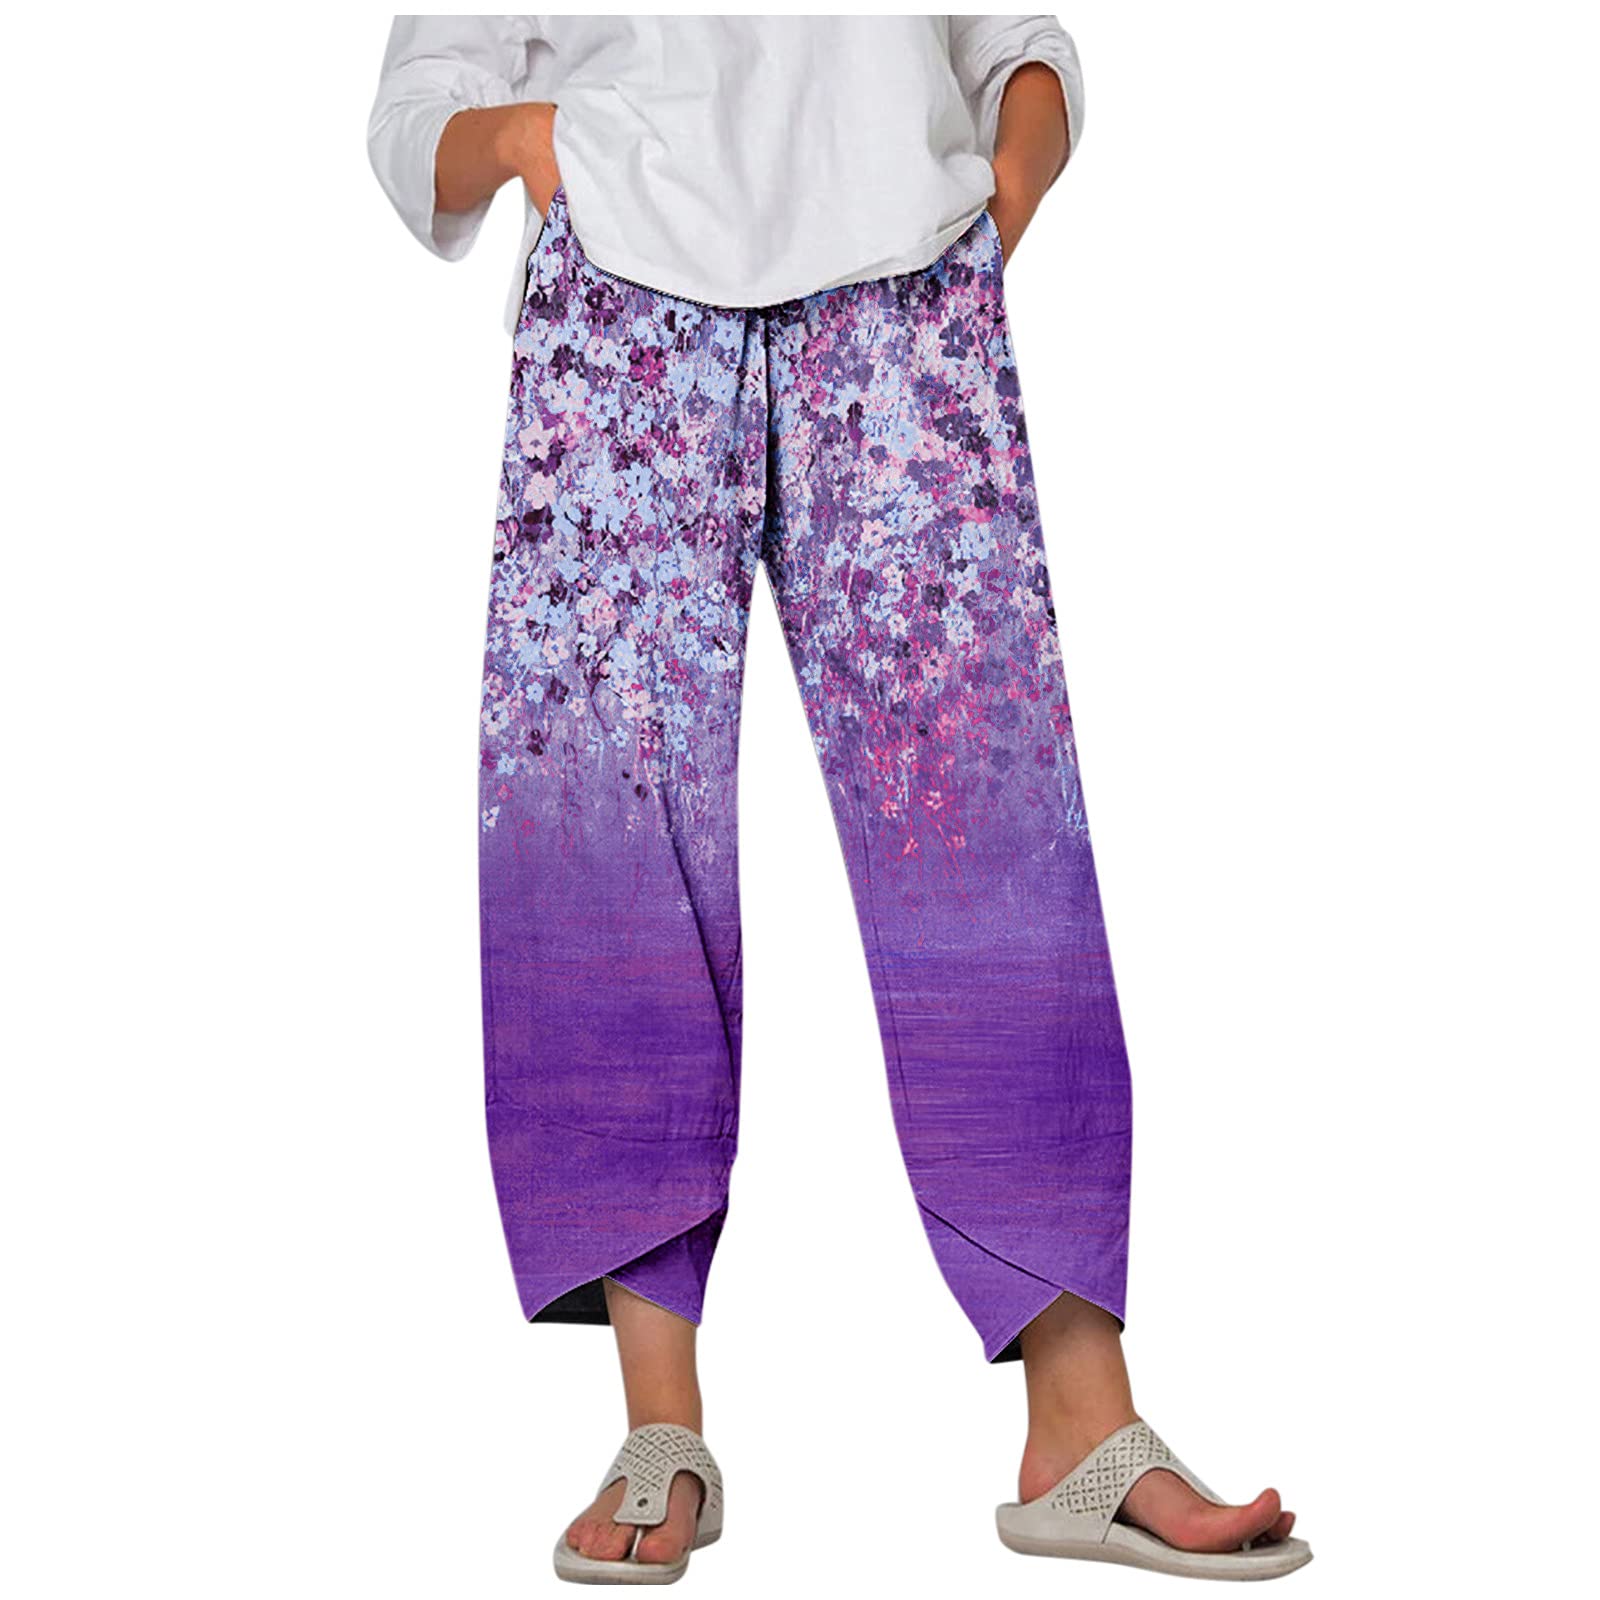 Linen Cropped Pants Women,Women's Casual Summer Capri Pants Cotton Linen  Print Wide Leg Ankle Pants